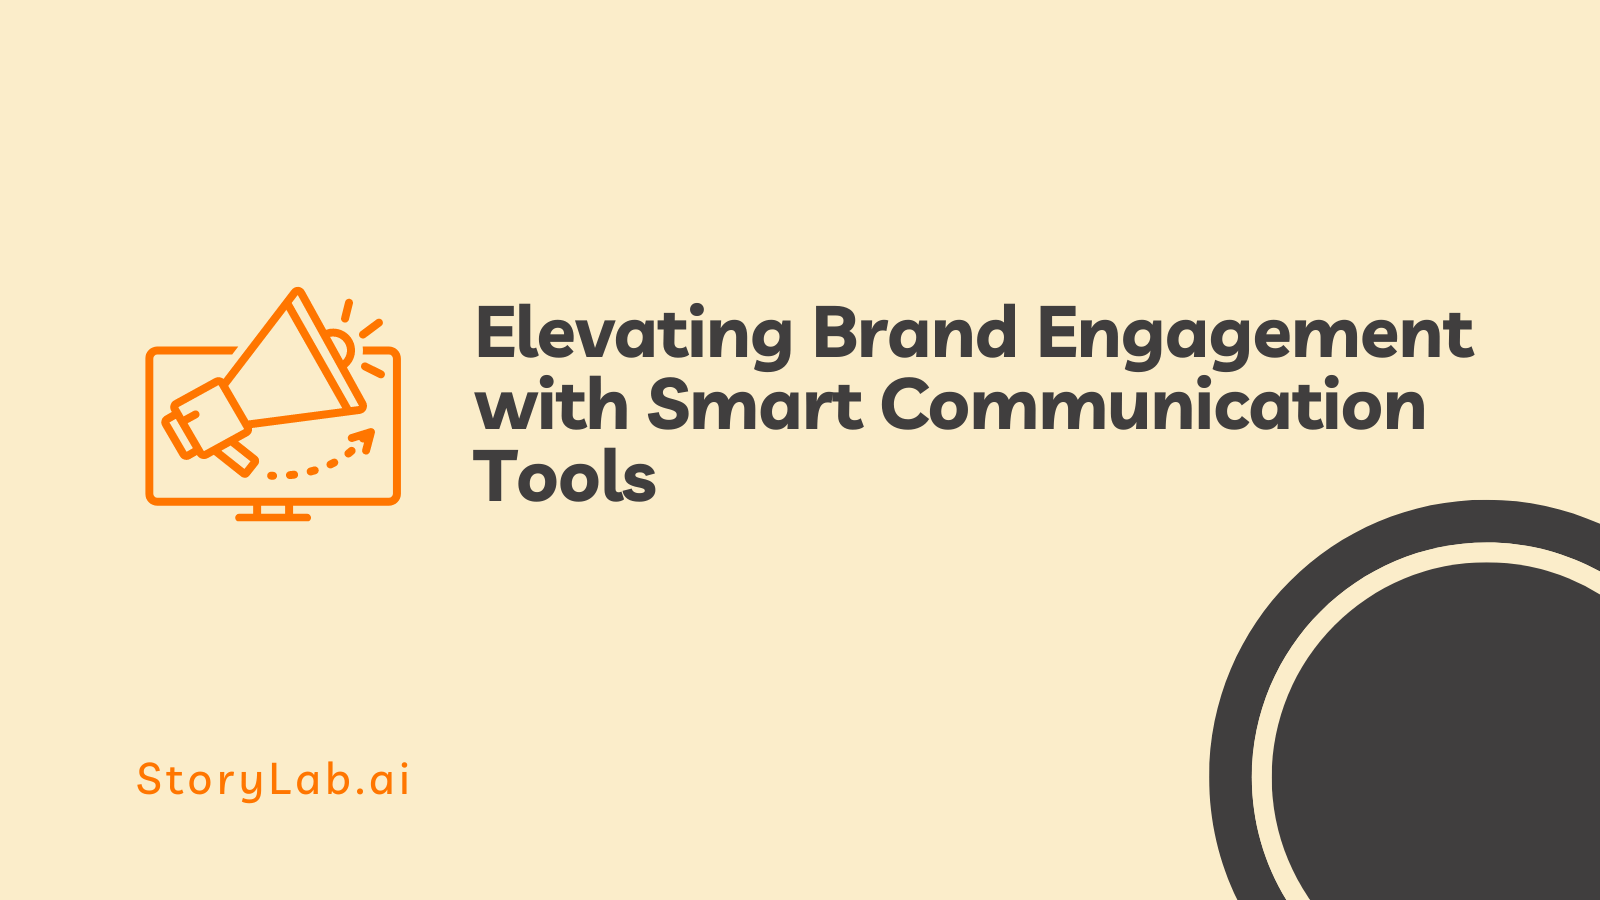 Améliorer l'engagement de la marque grâce à des outils de communication intelligents